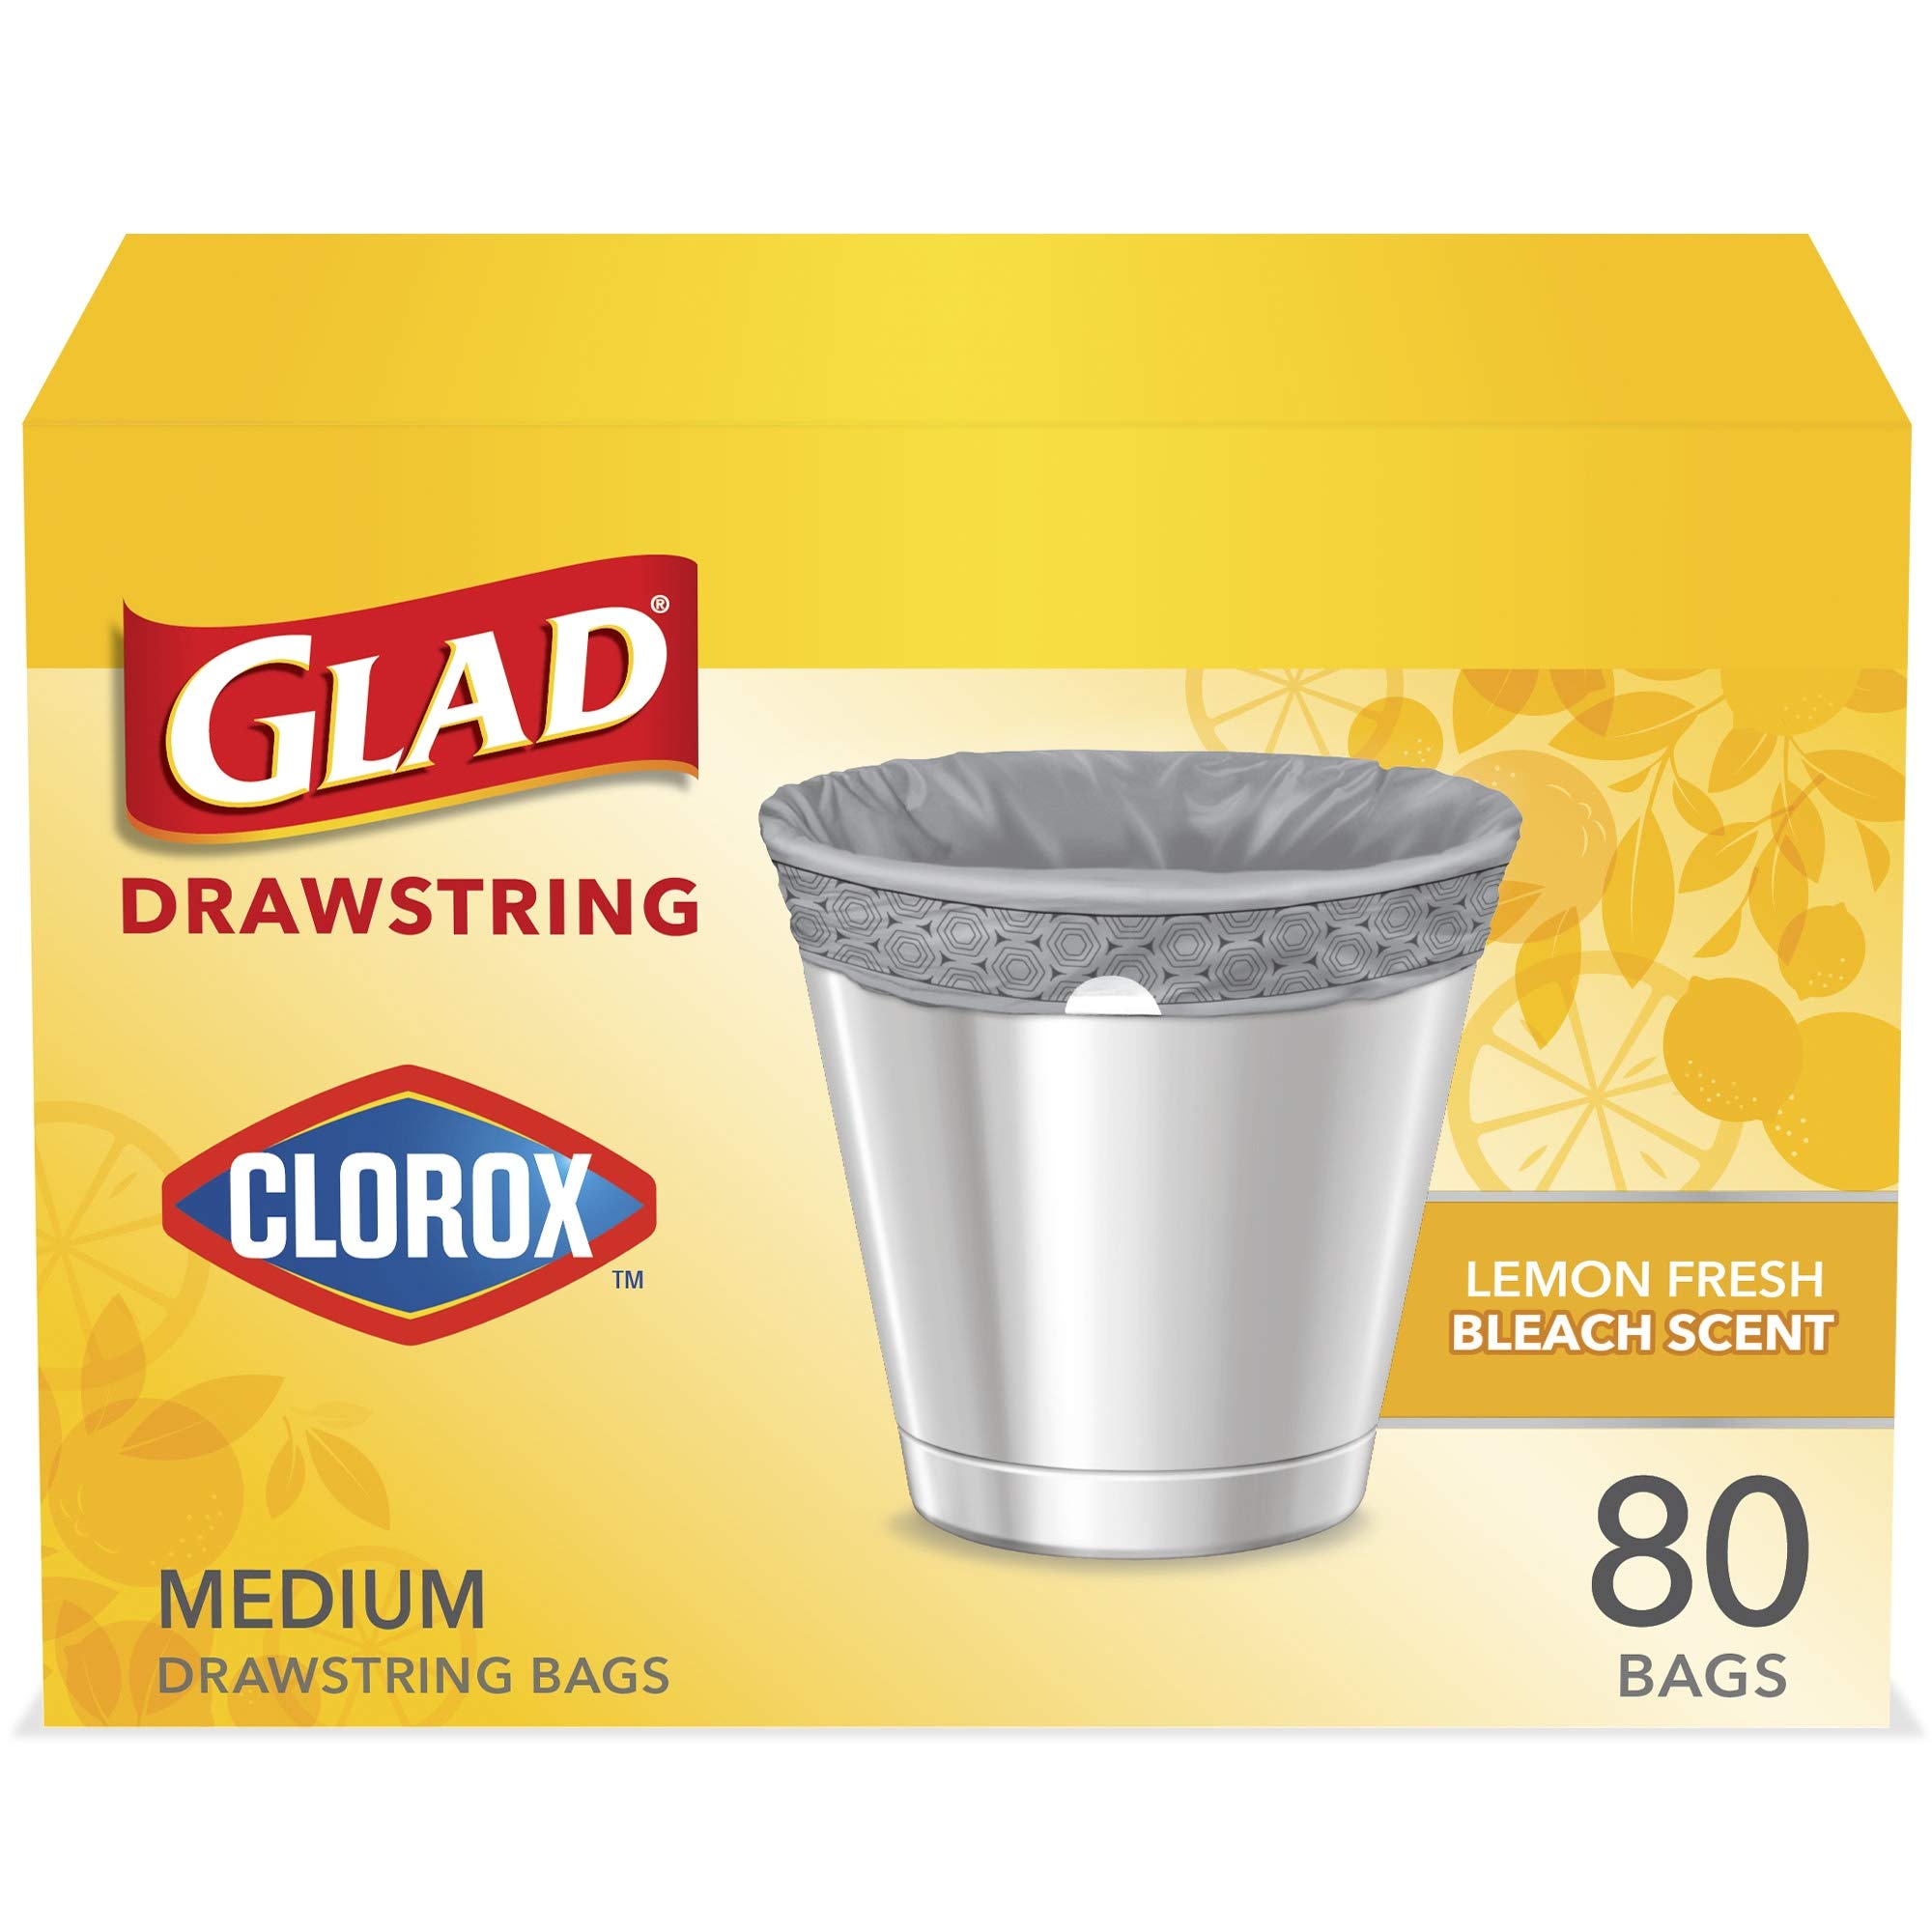 Glad Medium Drawstring Trash Bags with Clorox, 8 Gallon Grey Trash